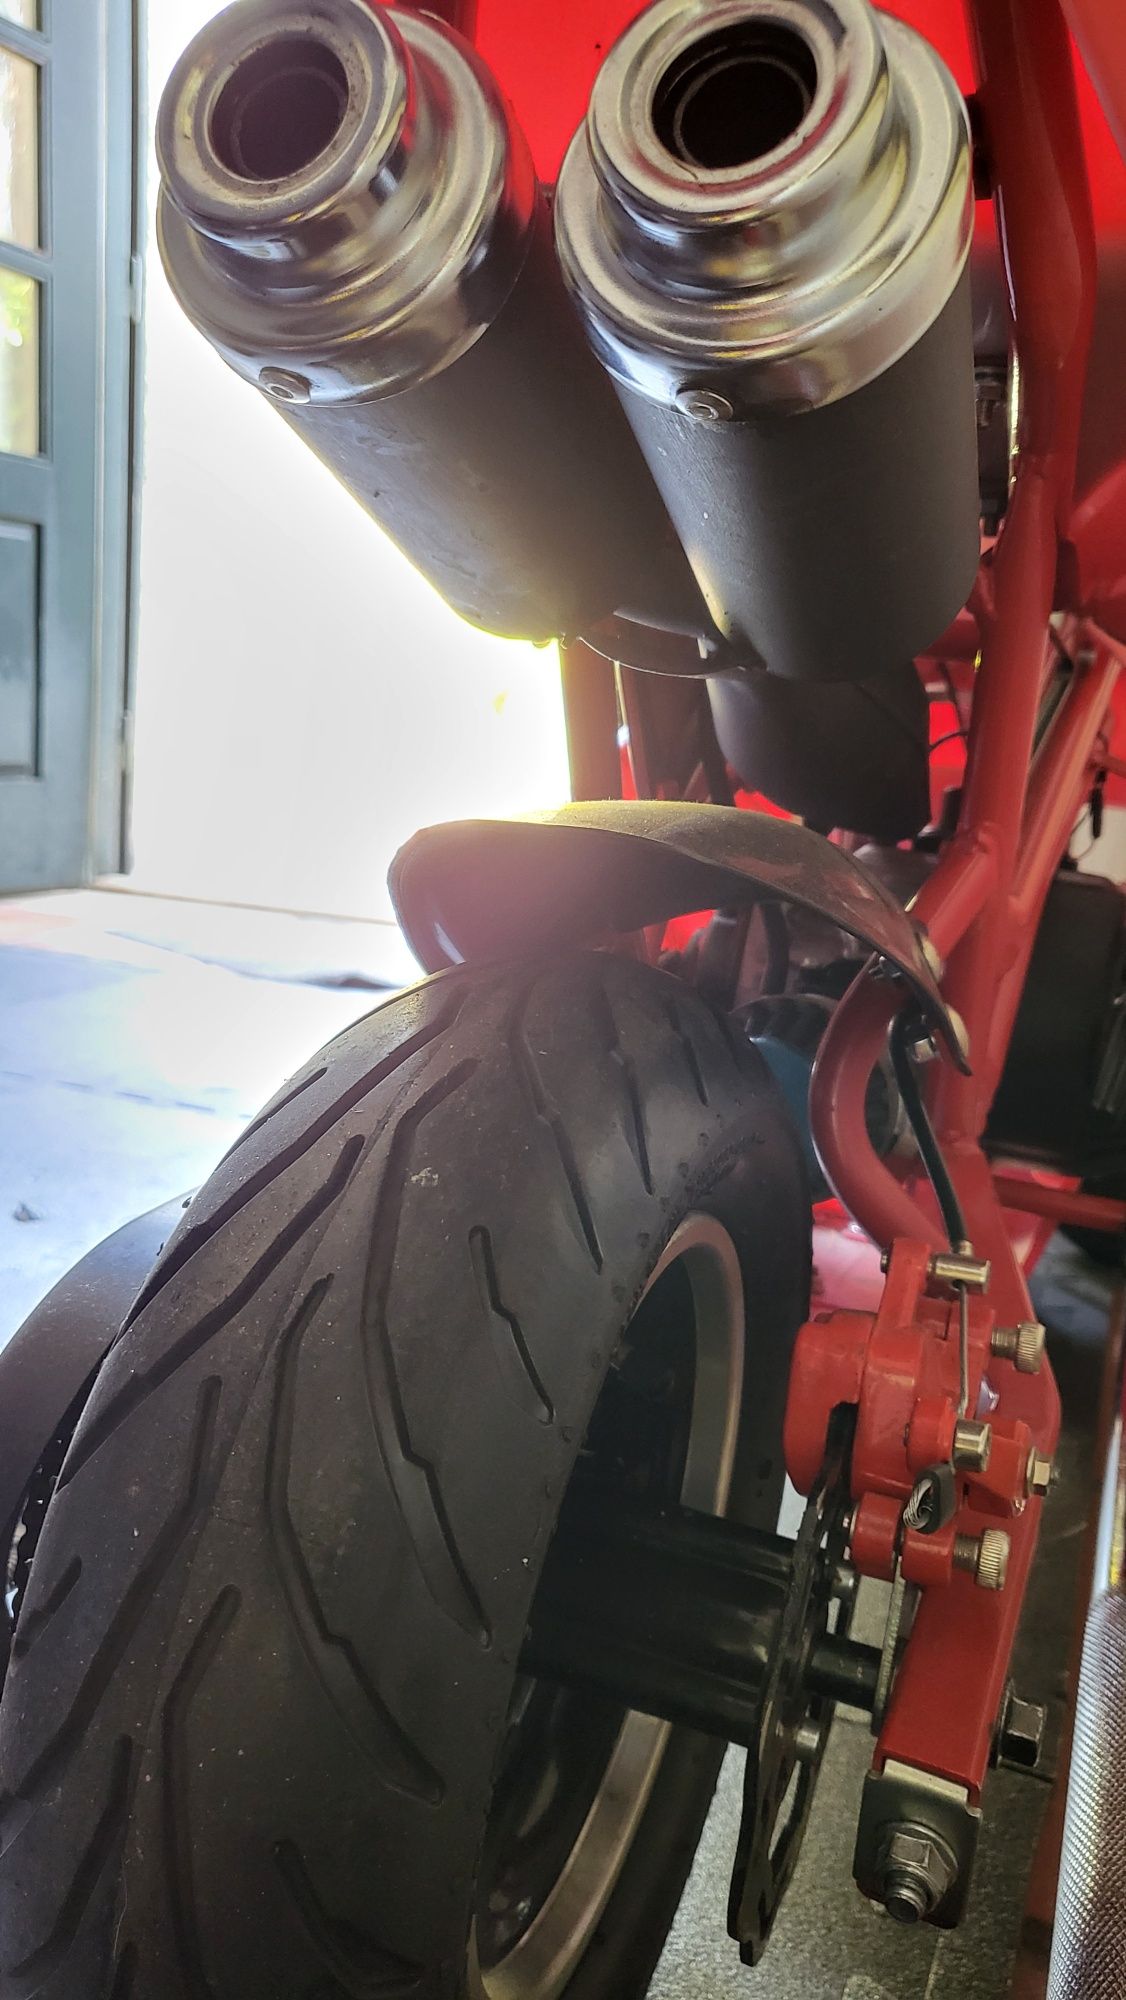 Mini moto GP 50cc Ducati como nova potente 2 escapes